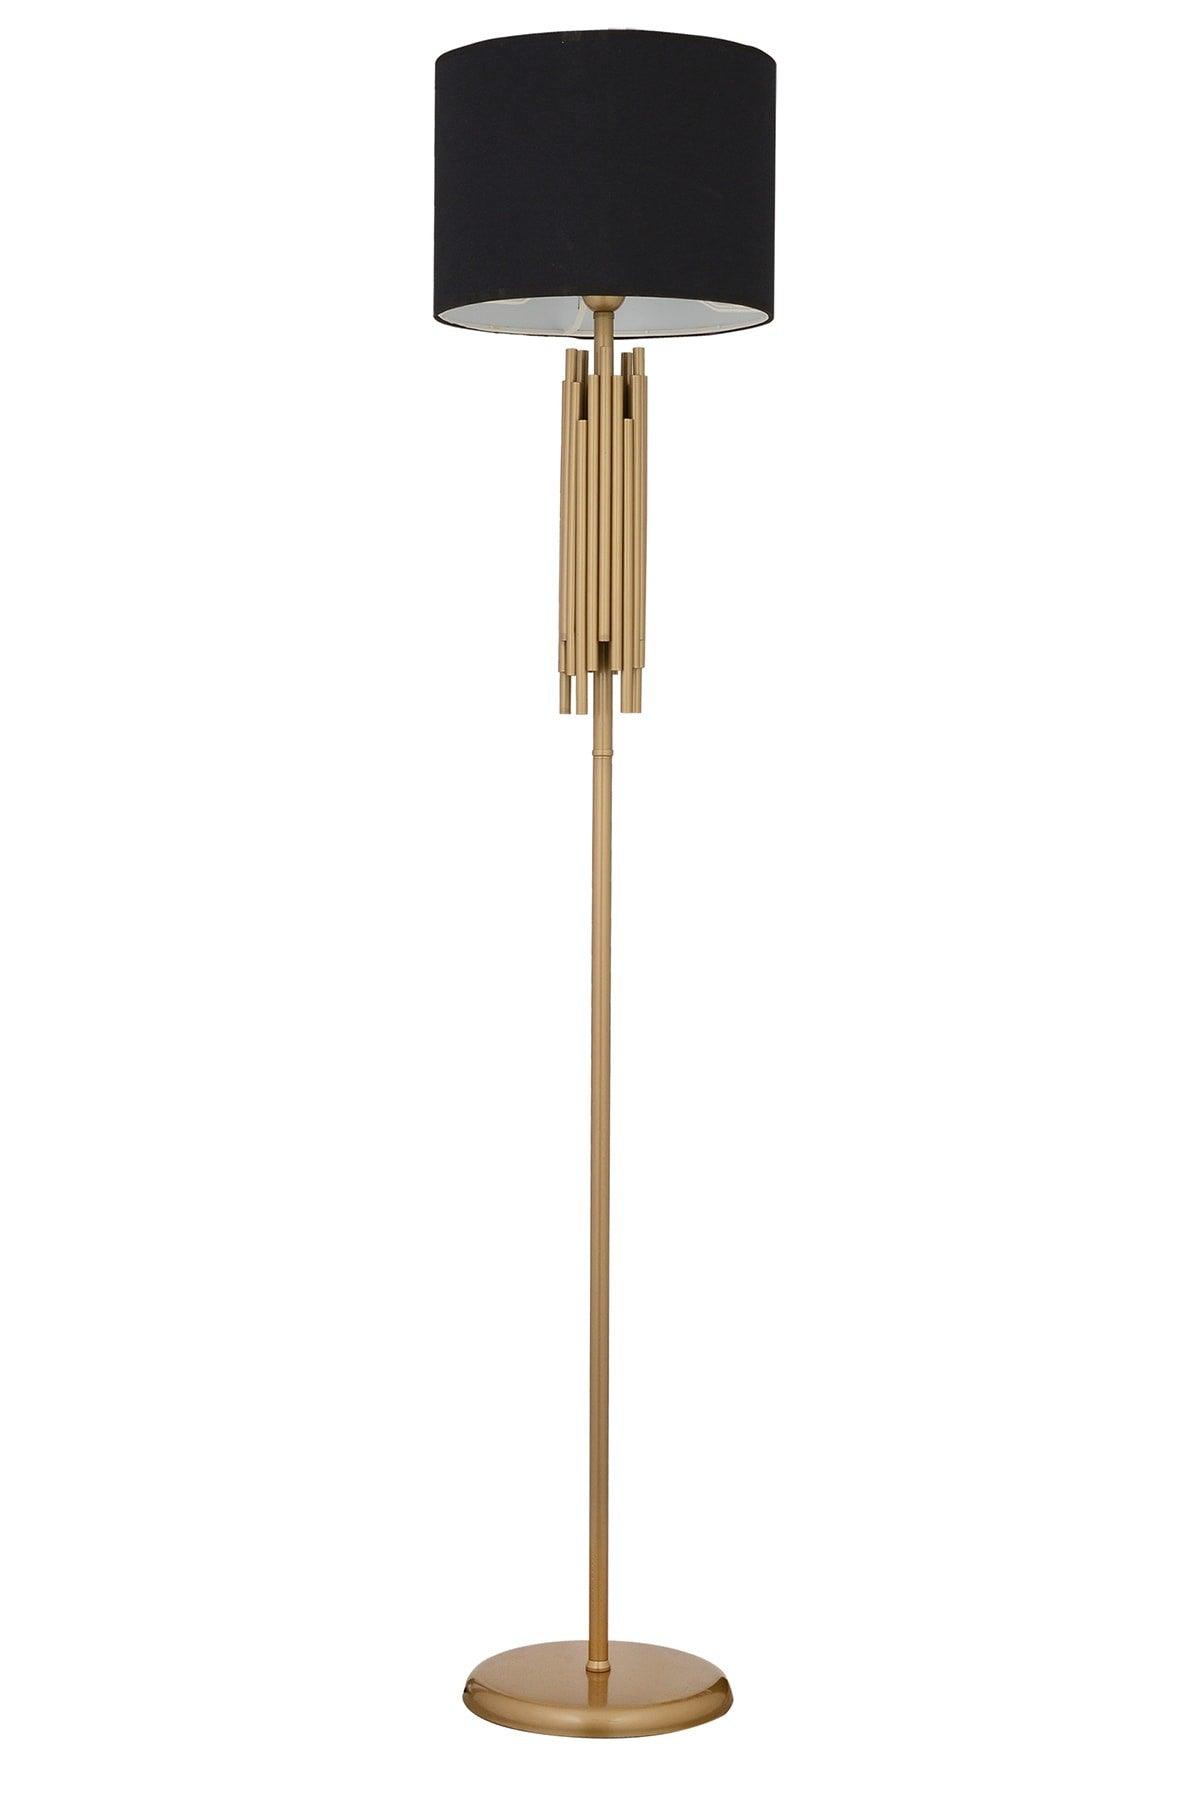 Matisse Black Cap Tumbled Decorative Design Standing Lampshade Lamp Modern Metal Floor Lamp - Swordslife